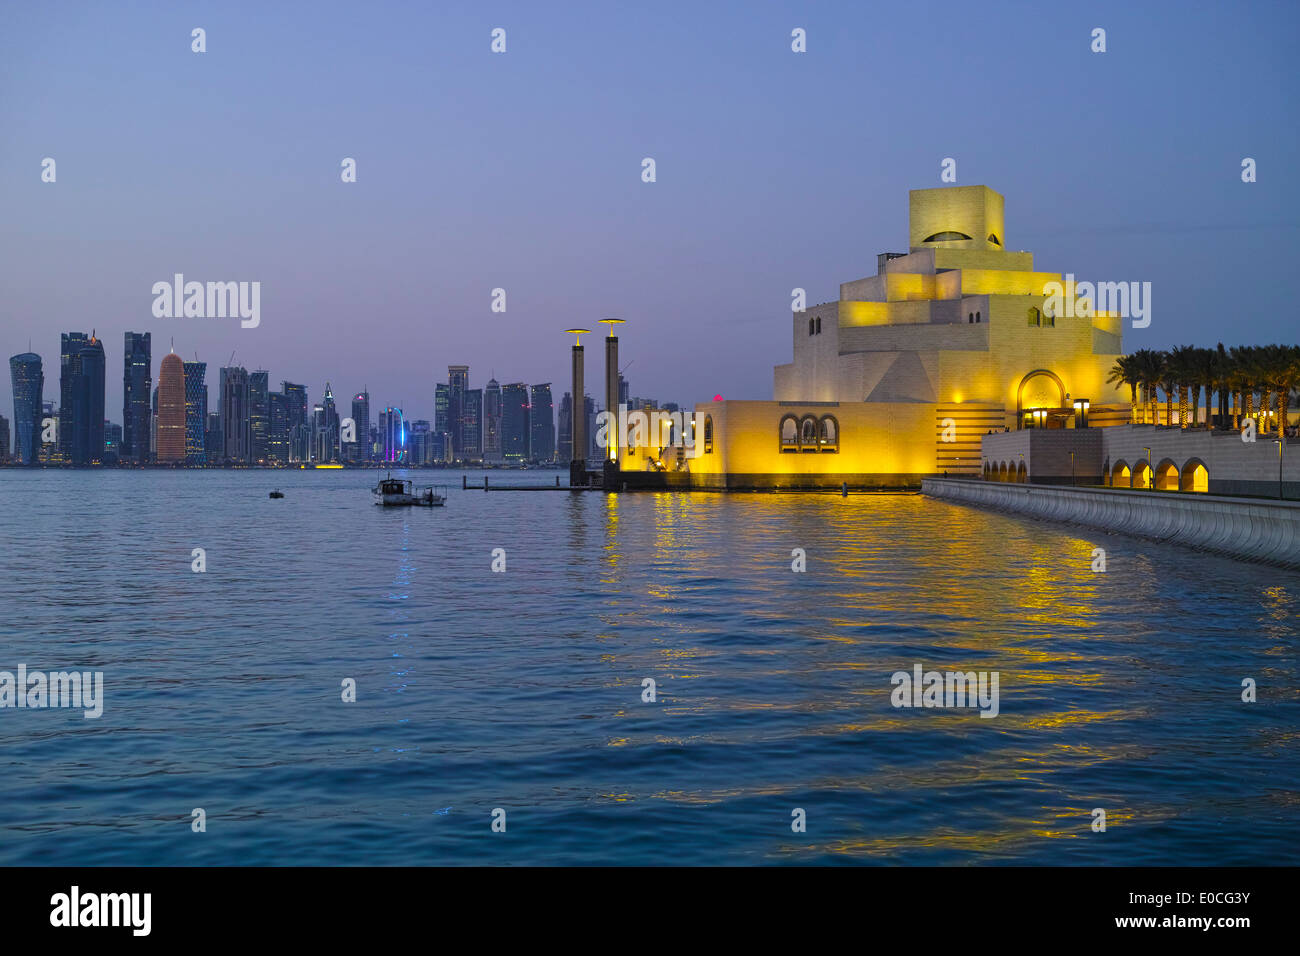 Doha. Katar. Museum für islamische Kunst von I.M.Pei entworfen. Stockfoto